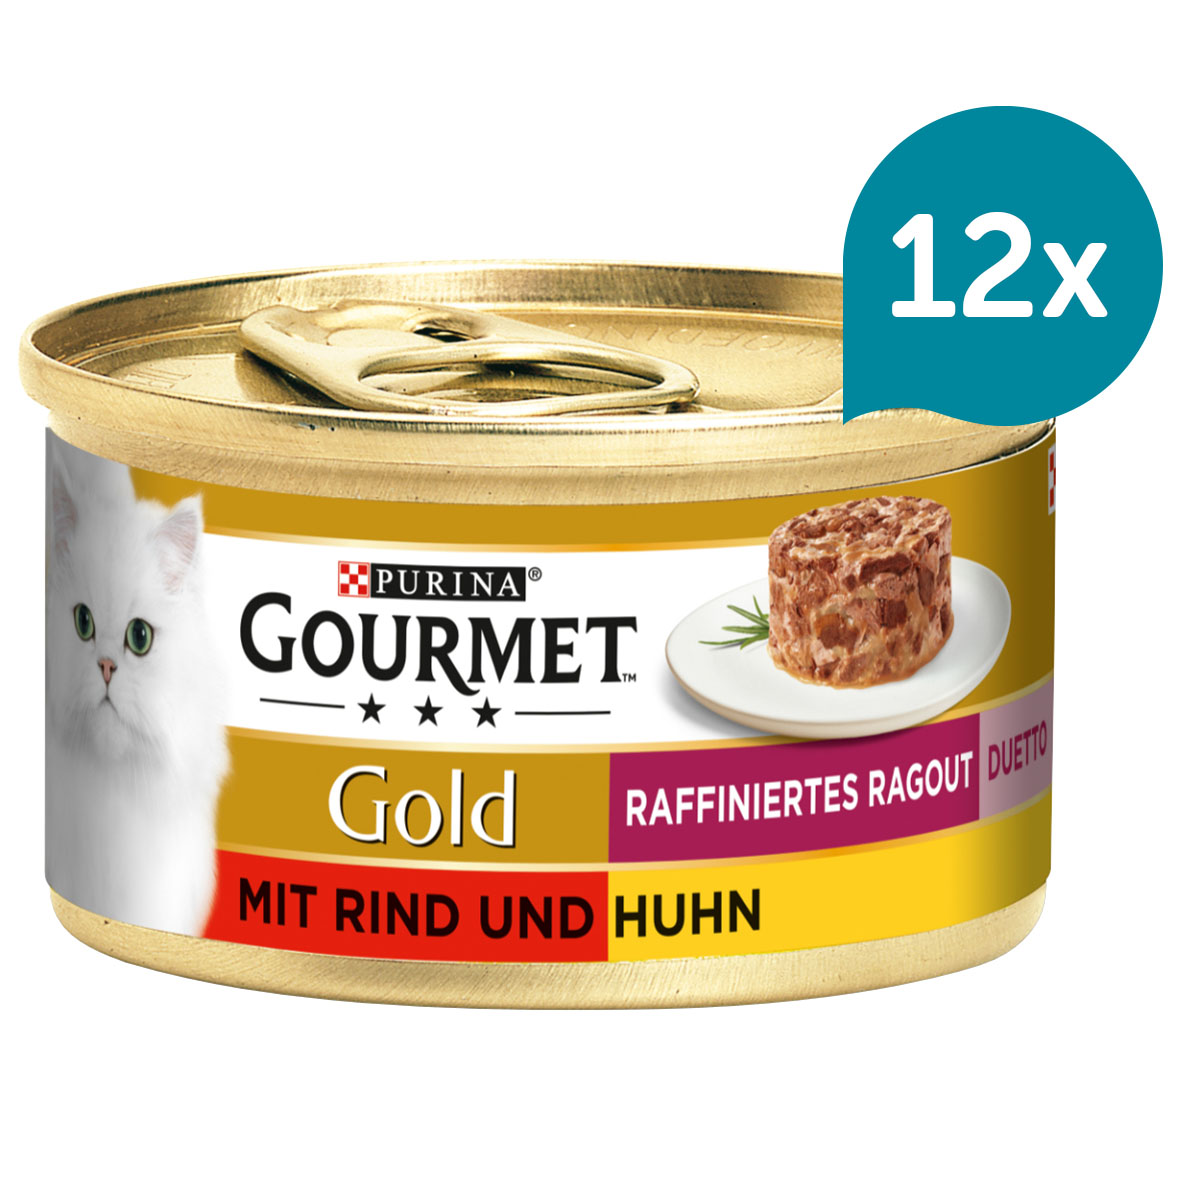 Krmivo pro kočky značky GOURMET Gold, Rafinované ragú Duetto s hovězím a kuřecím masem